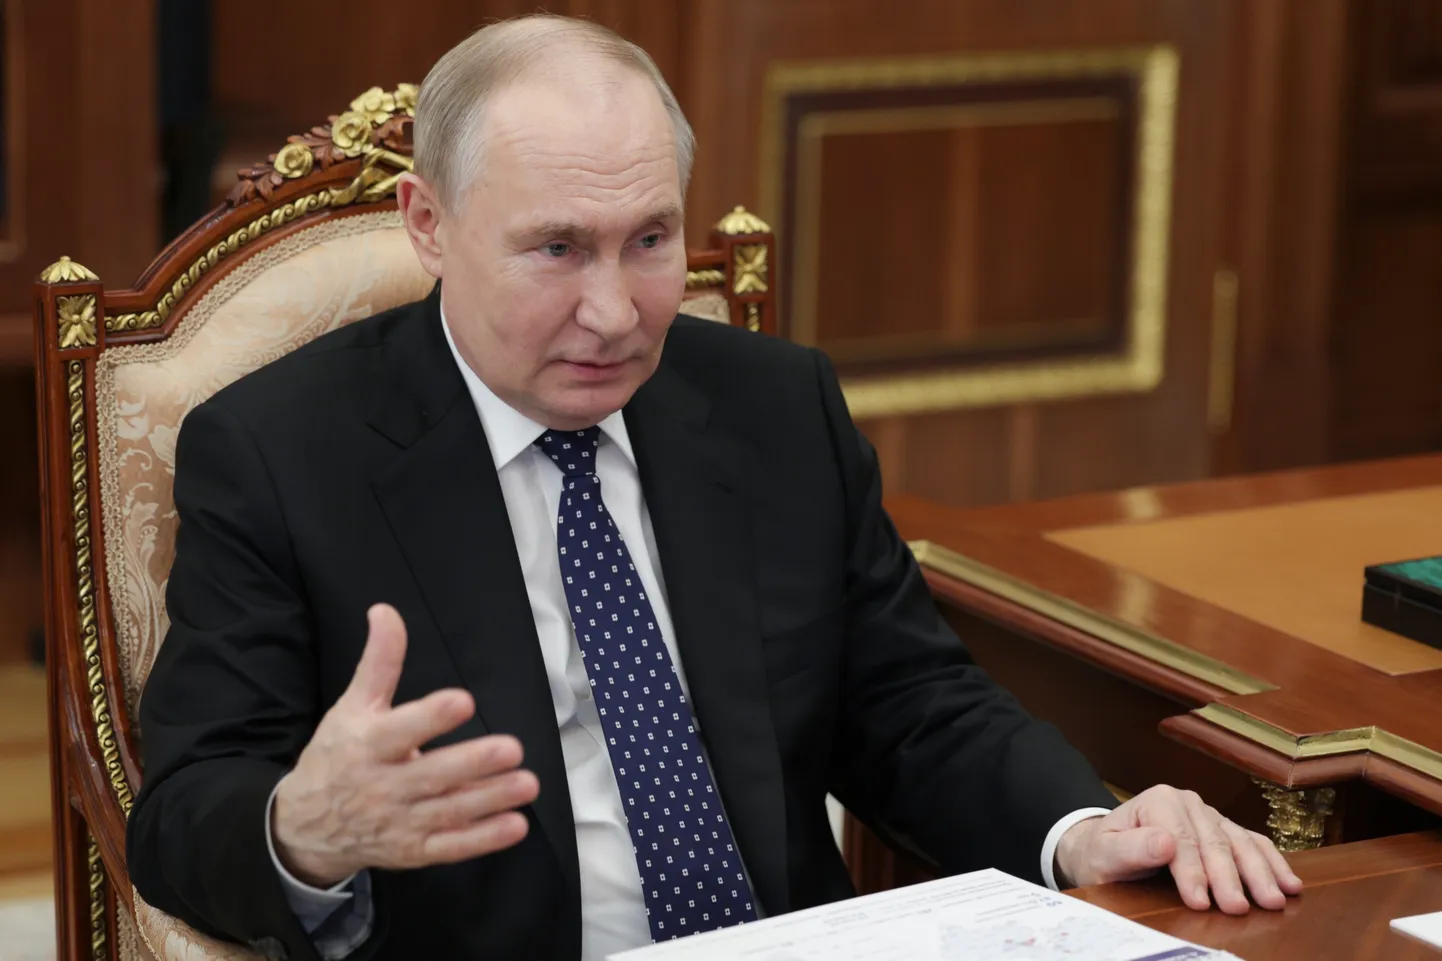 Venemaa režiimi juht Vladimir Putin.